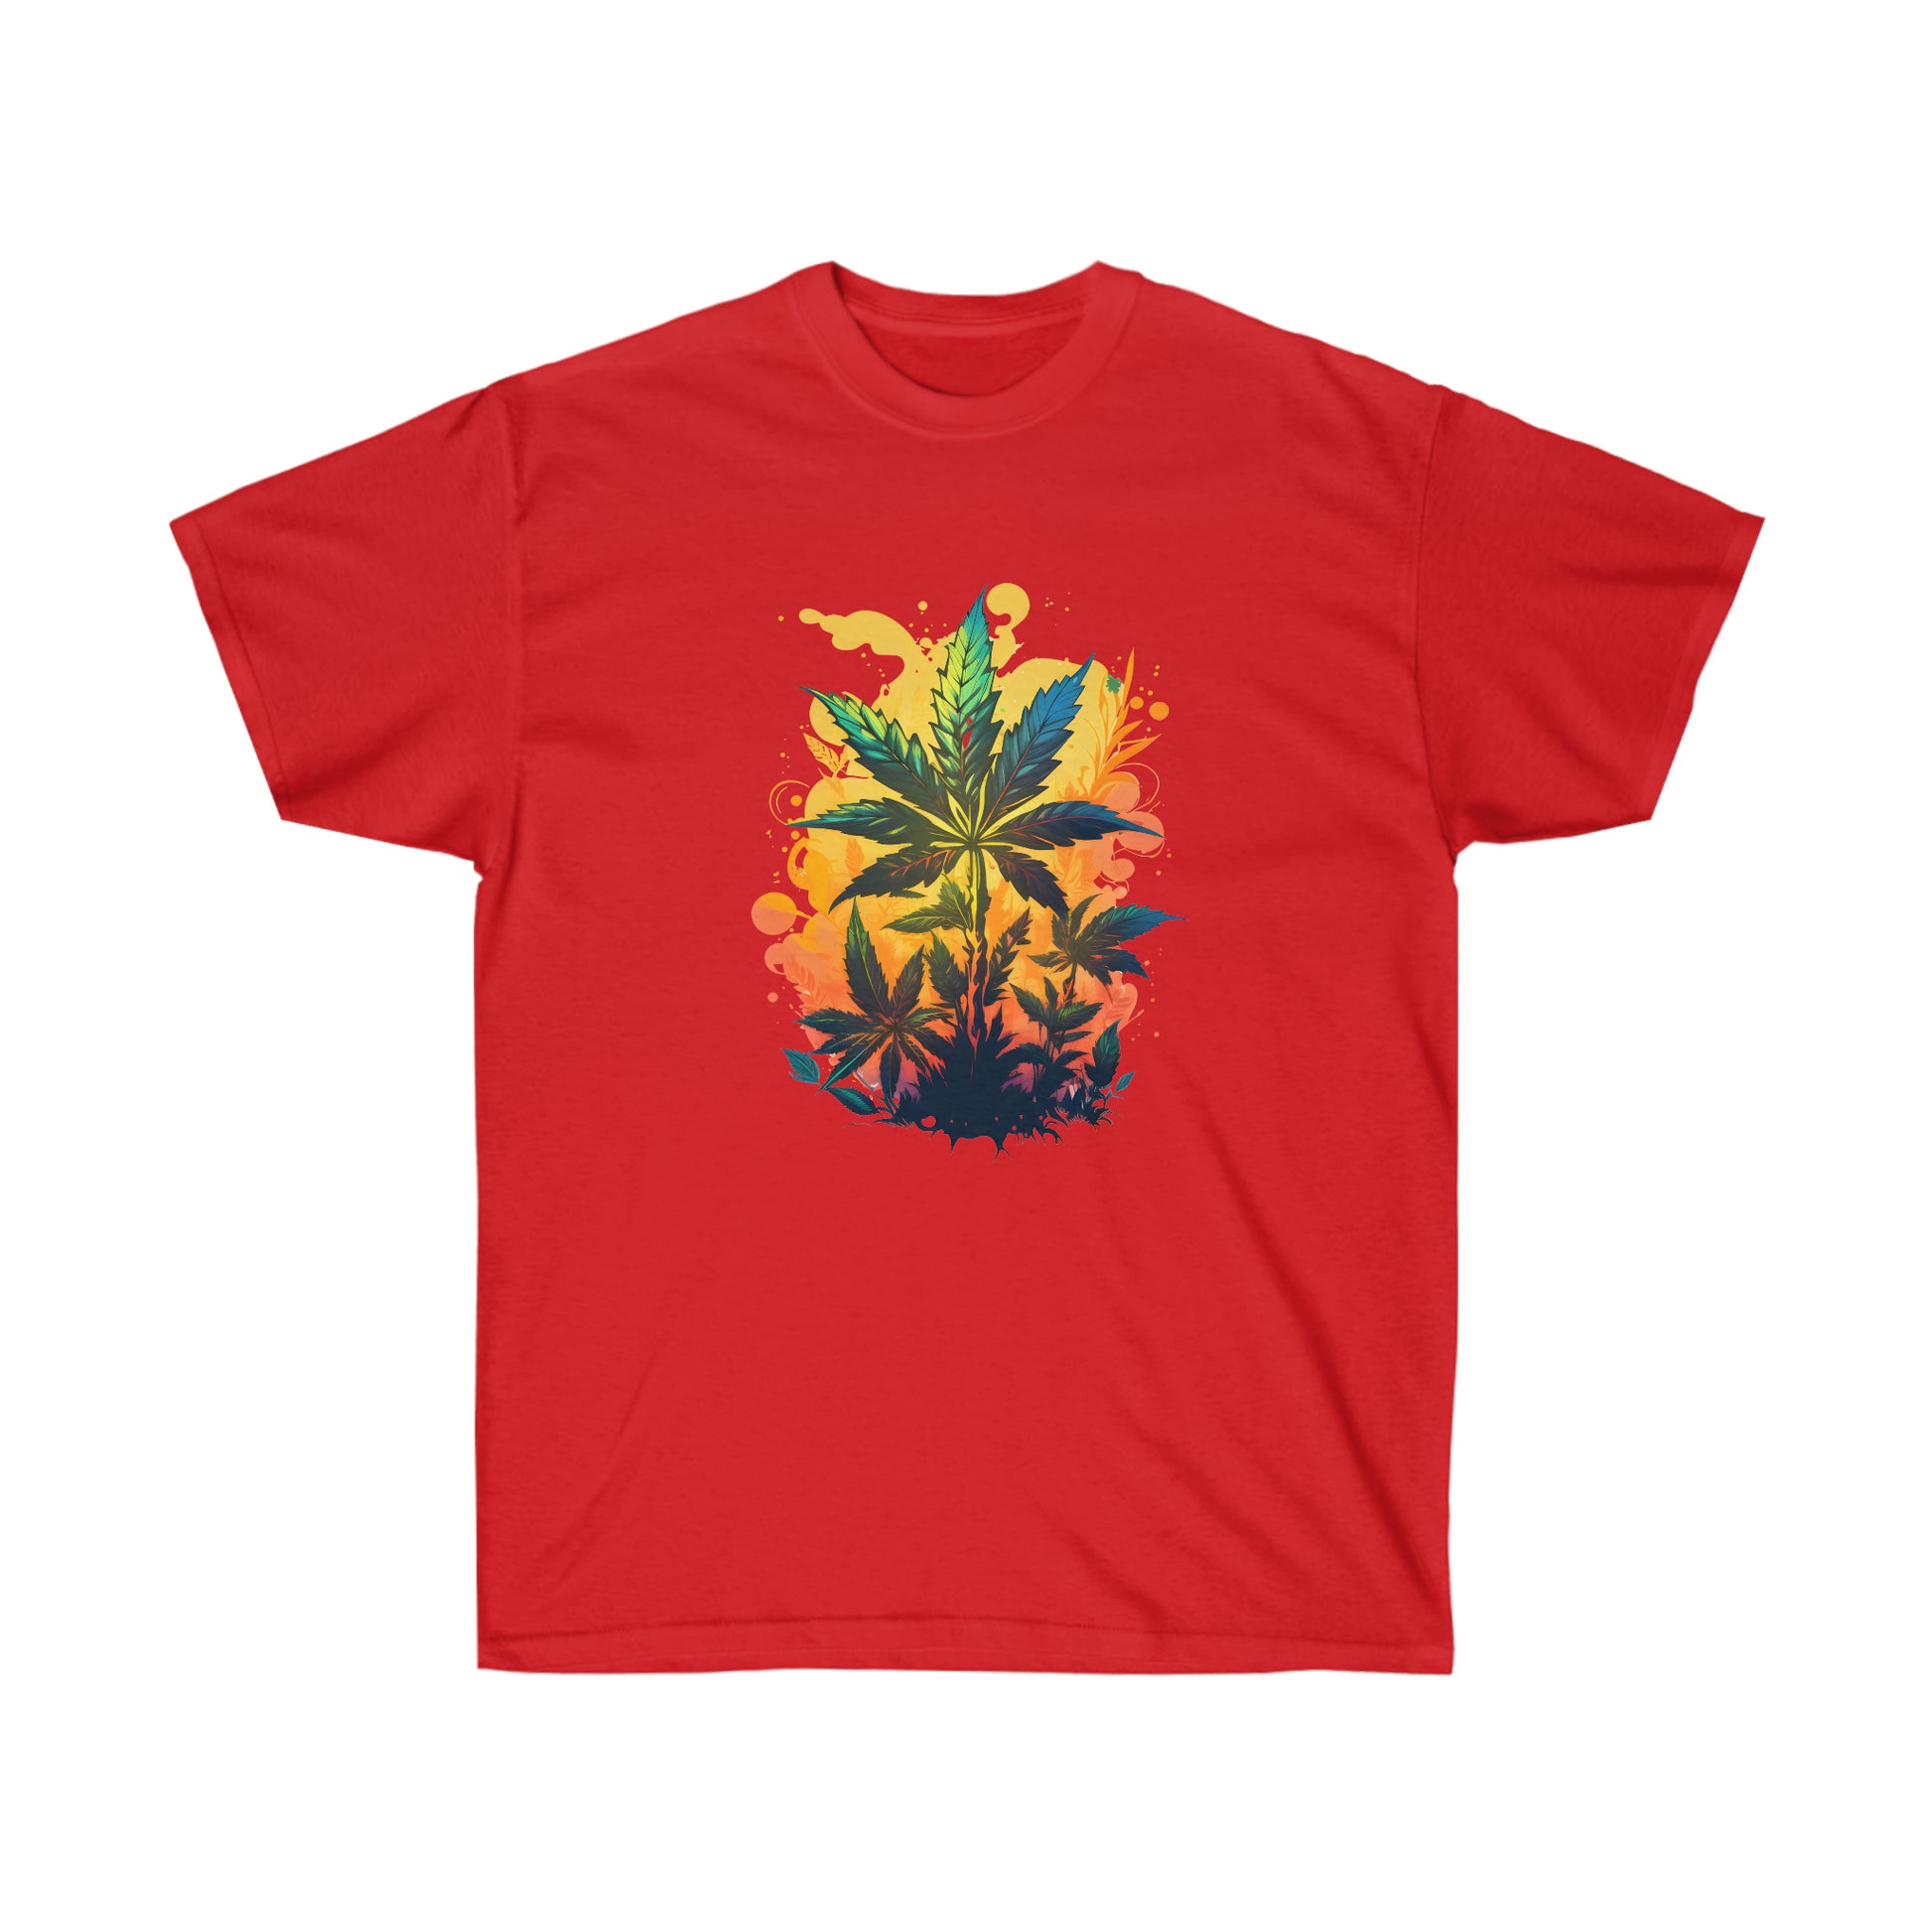 A red warm paradise cannabis t-shirt